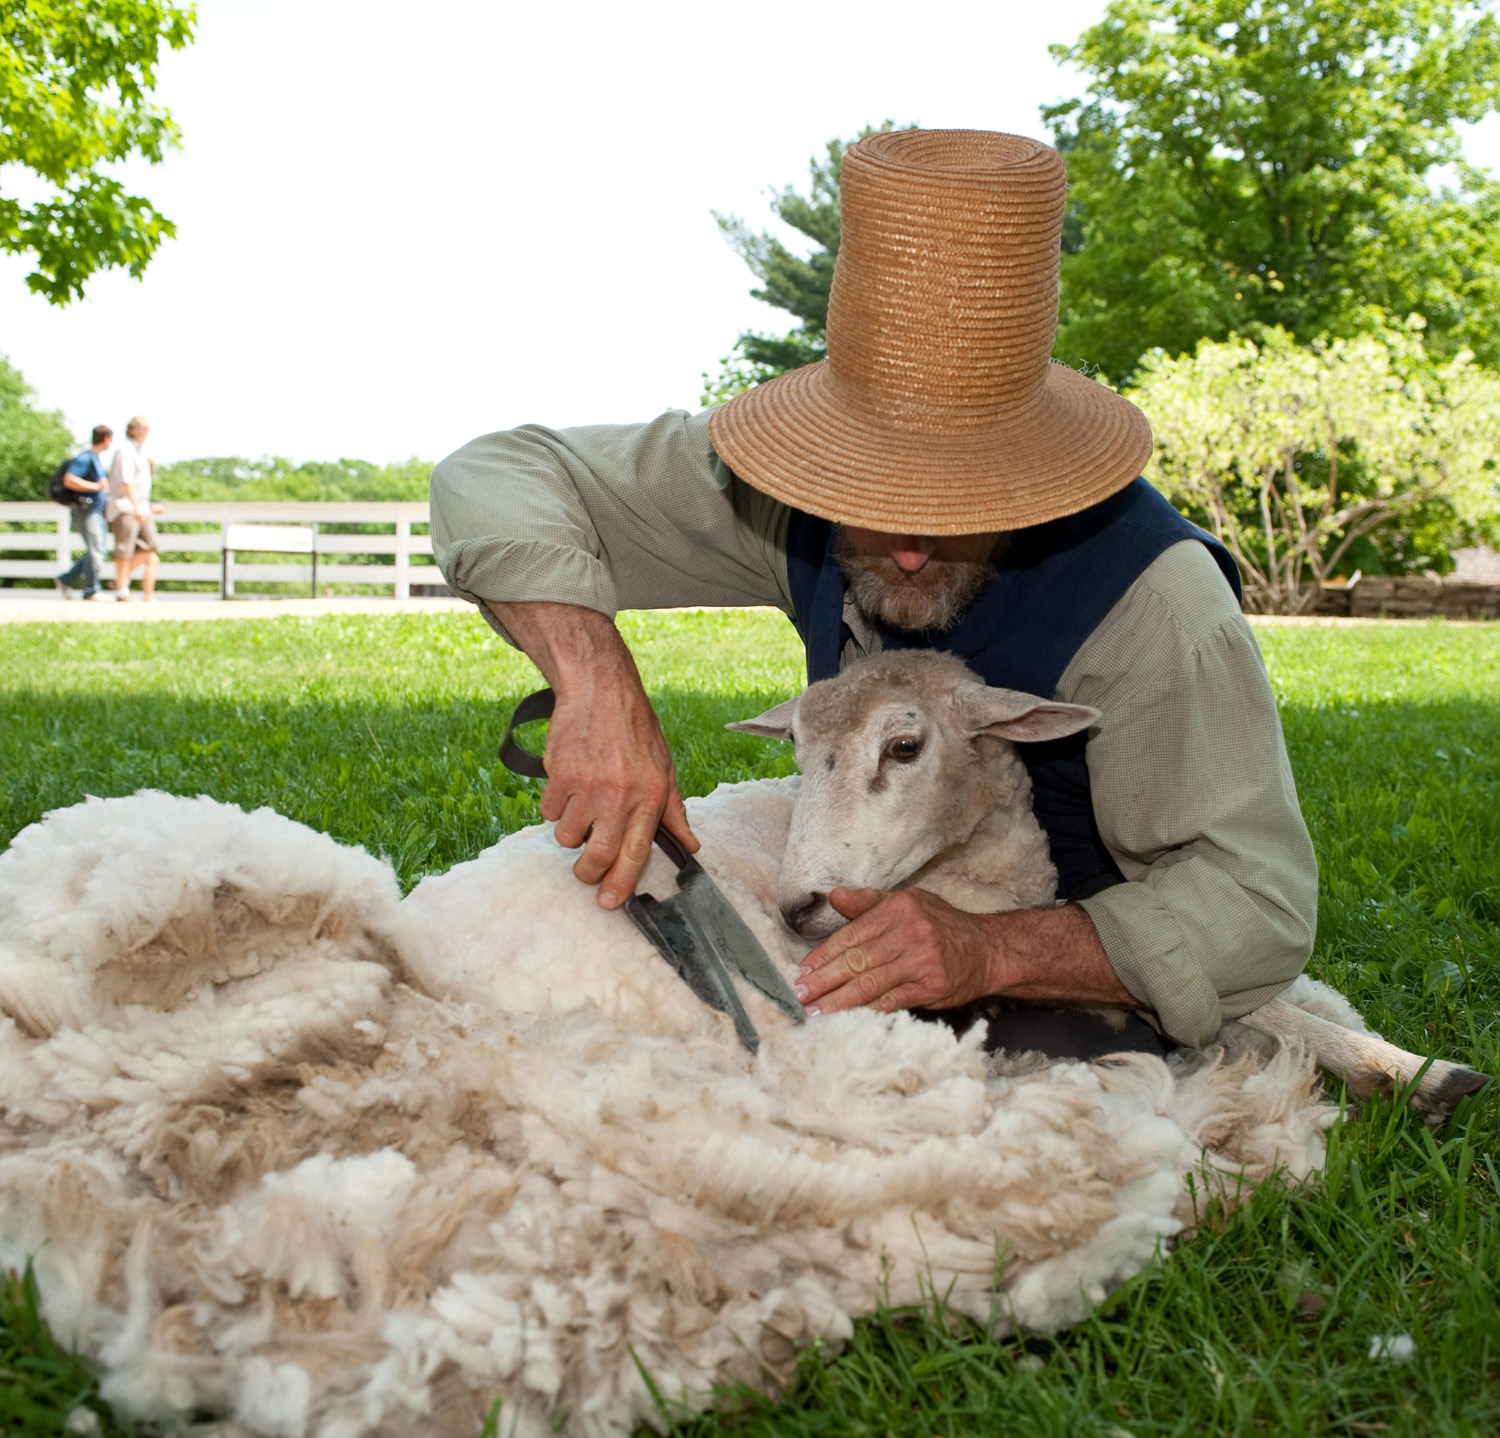 Sheep Wool Shearing Sheep Wool Shearing Sheep